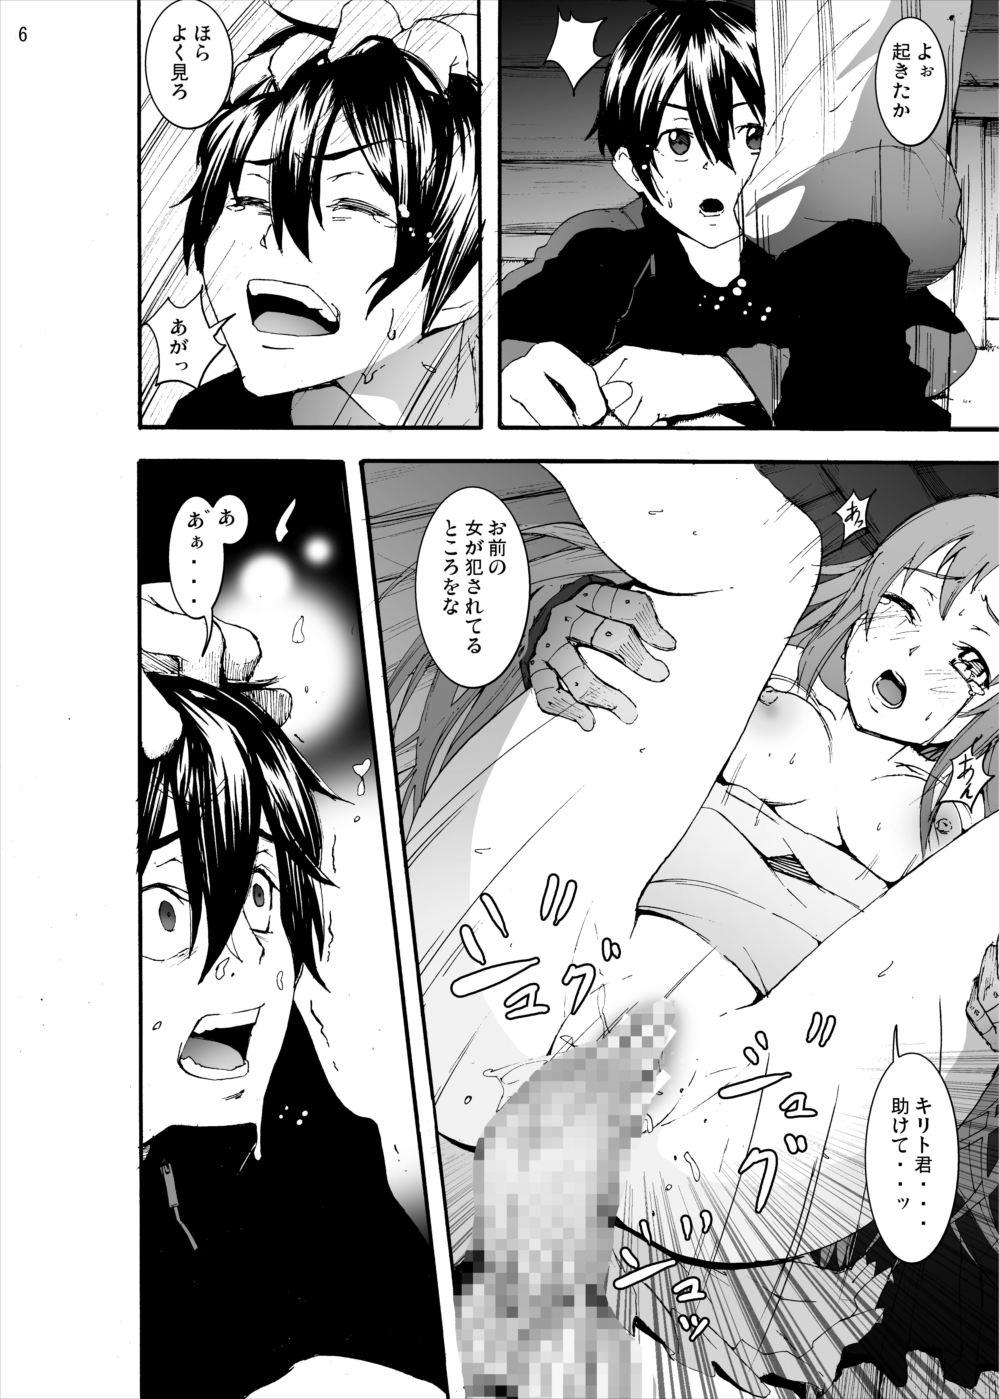  Asuna to Yui no Jigoku Rape... Ryoujoku Oyakodon Story - Sword art online Free Porn Hardcore - Page 5